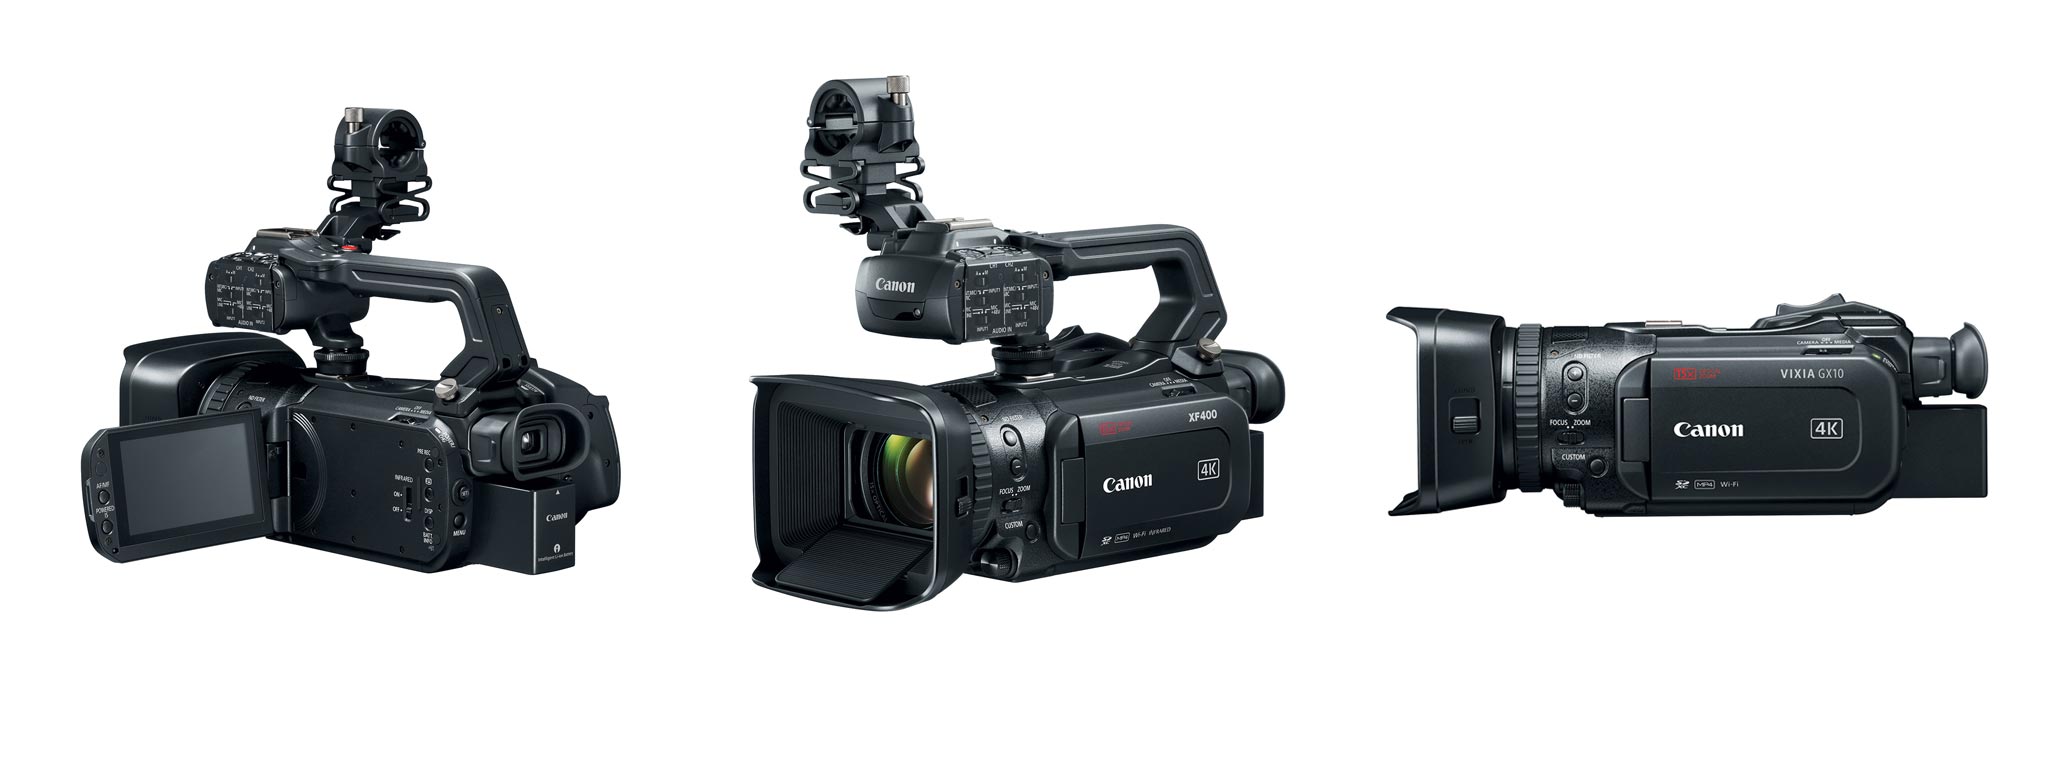 Canon giới thiệu 3 máy quay phim cầm tay 4K, lấy nét Dual Pixel, zoom quang 15x, chống rung 5 trục